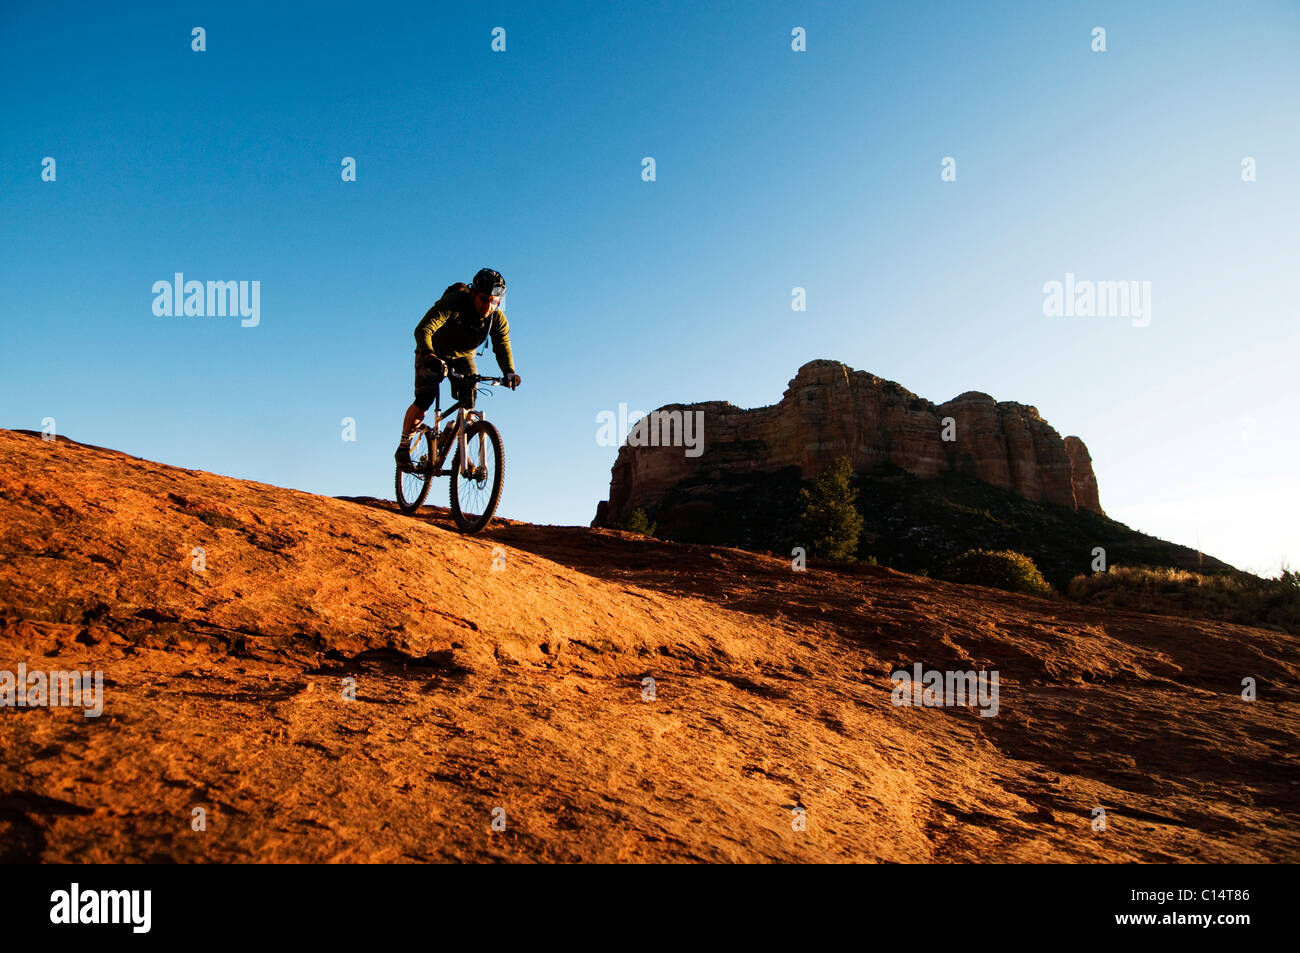 Un homme d'âge moyen chevauche son vélo de montagne à travers le pays des roches rouges de Sedona, AZ. Banque D'Images